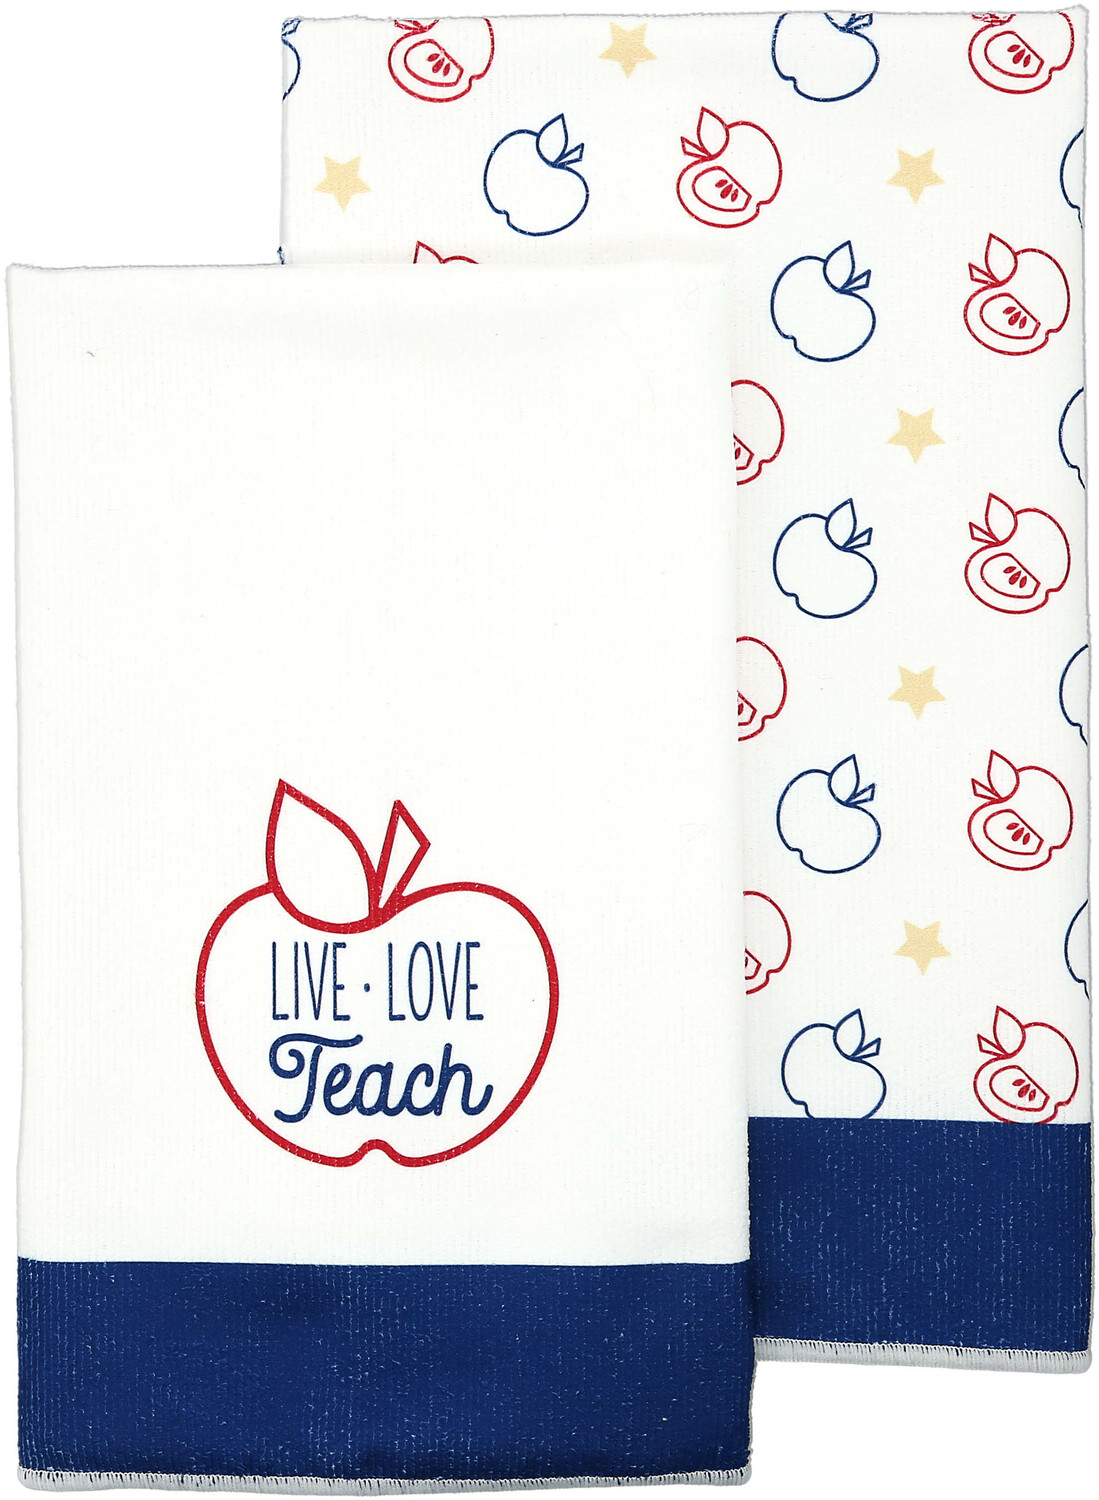 Live. Love. Teach. by Teachable Moments - Live. Love. Teach. - Tea Towel Gift Set
(2 - 19.75" x 27.5")